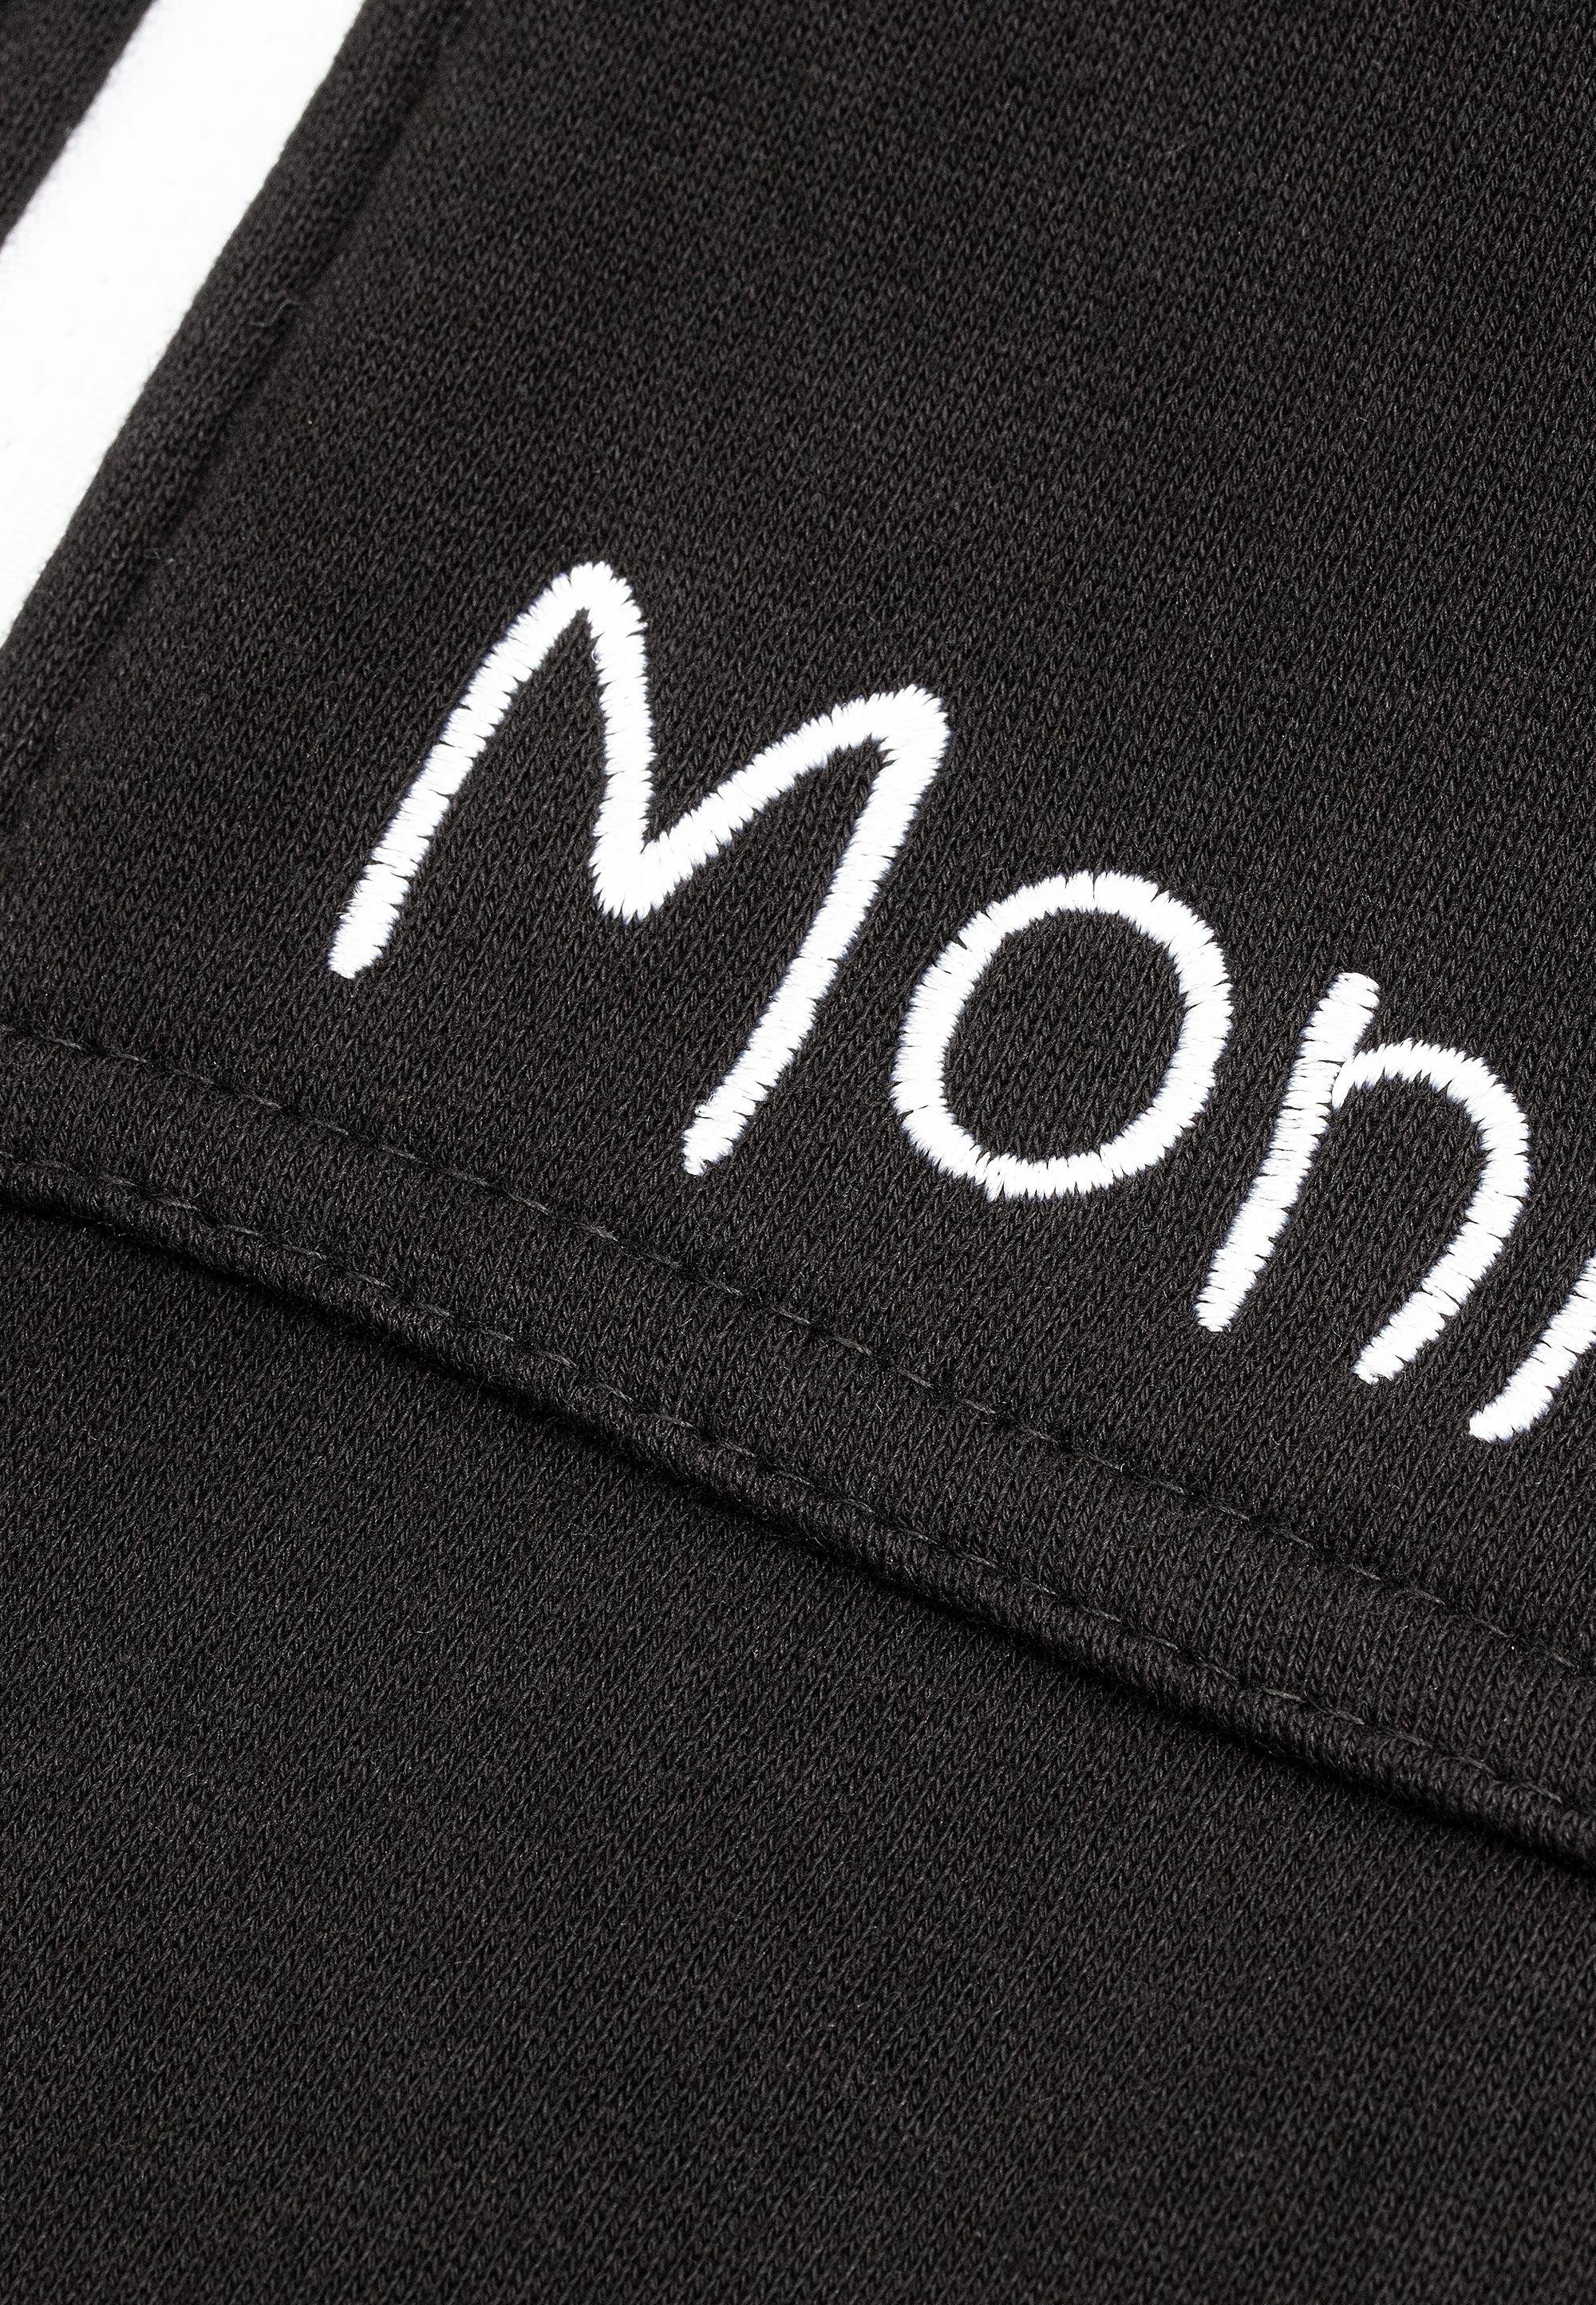 Moniz Jumpsuit aus kuschelig schwarz-weiß weichem Material